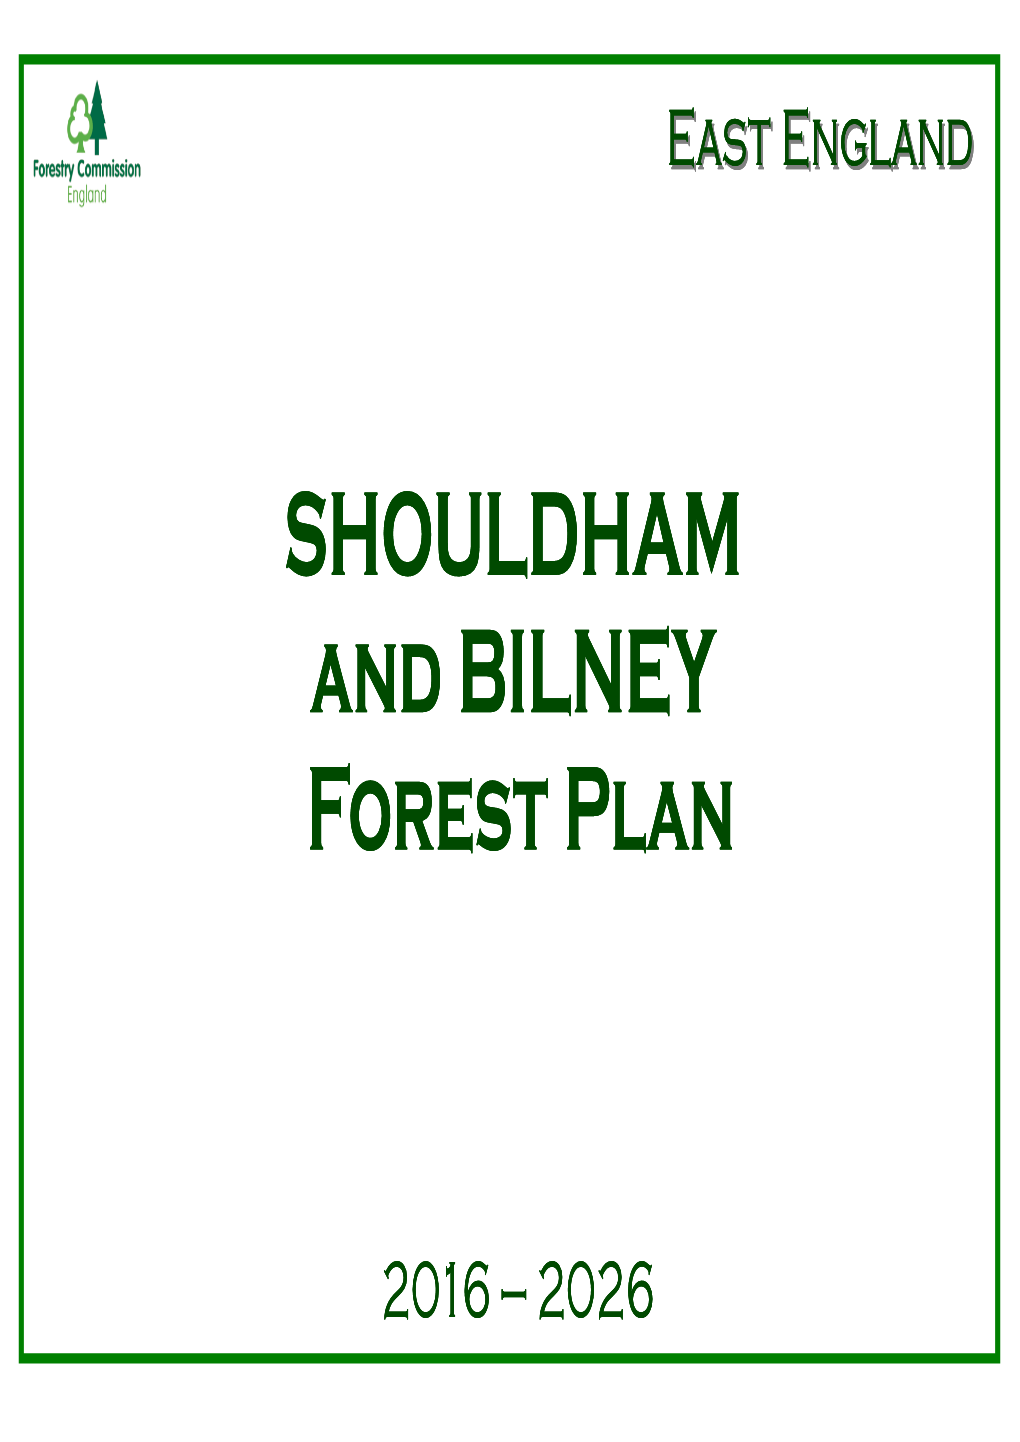 Shouldham and Bilney Forest Plan 2016-2026